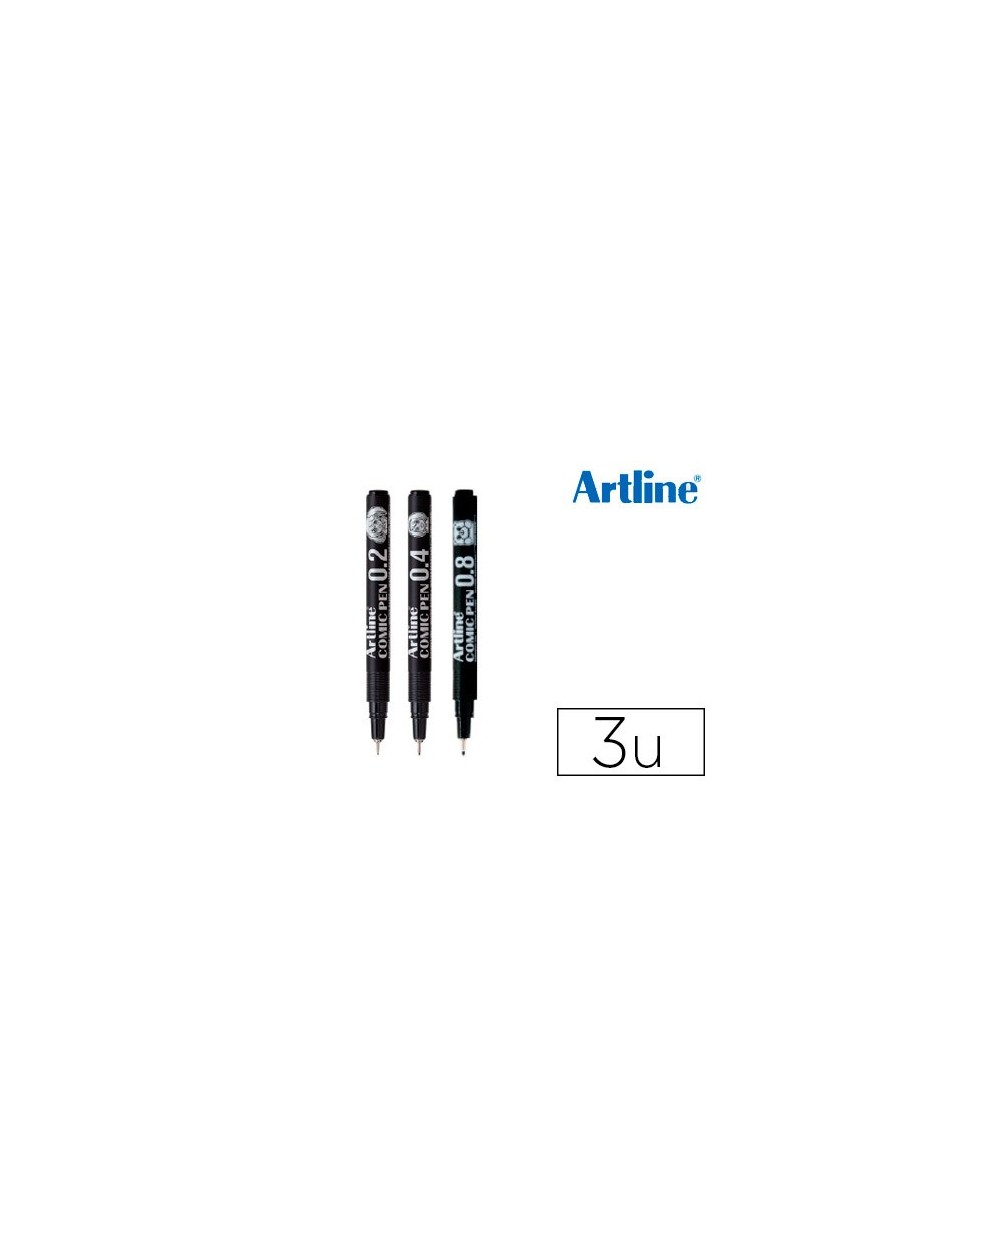 Rotulador artline comic pen calibrado micrometrico negro bolsa de 3 uds 02 04 08 mm